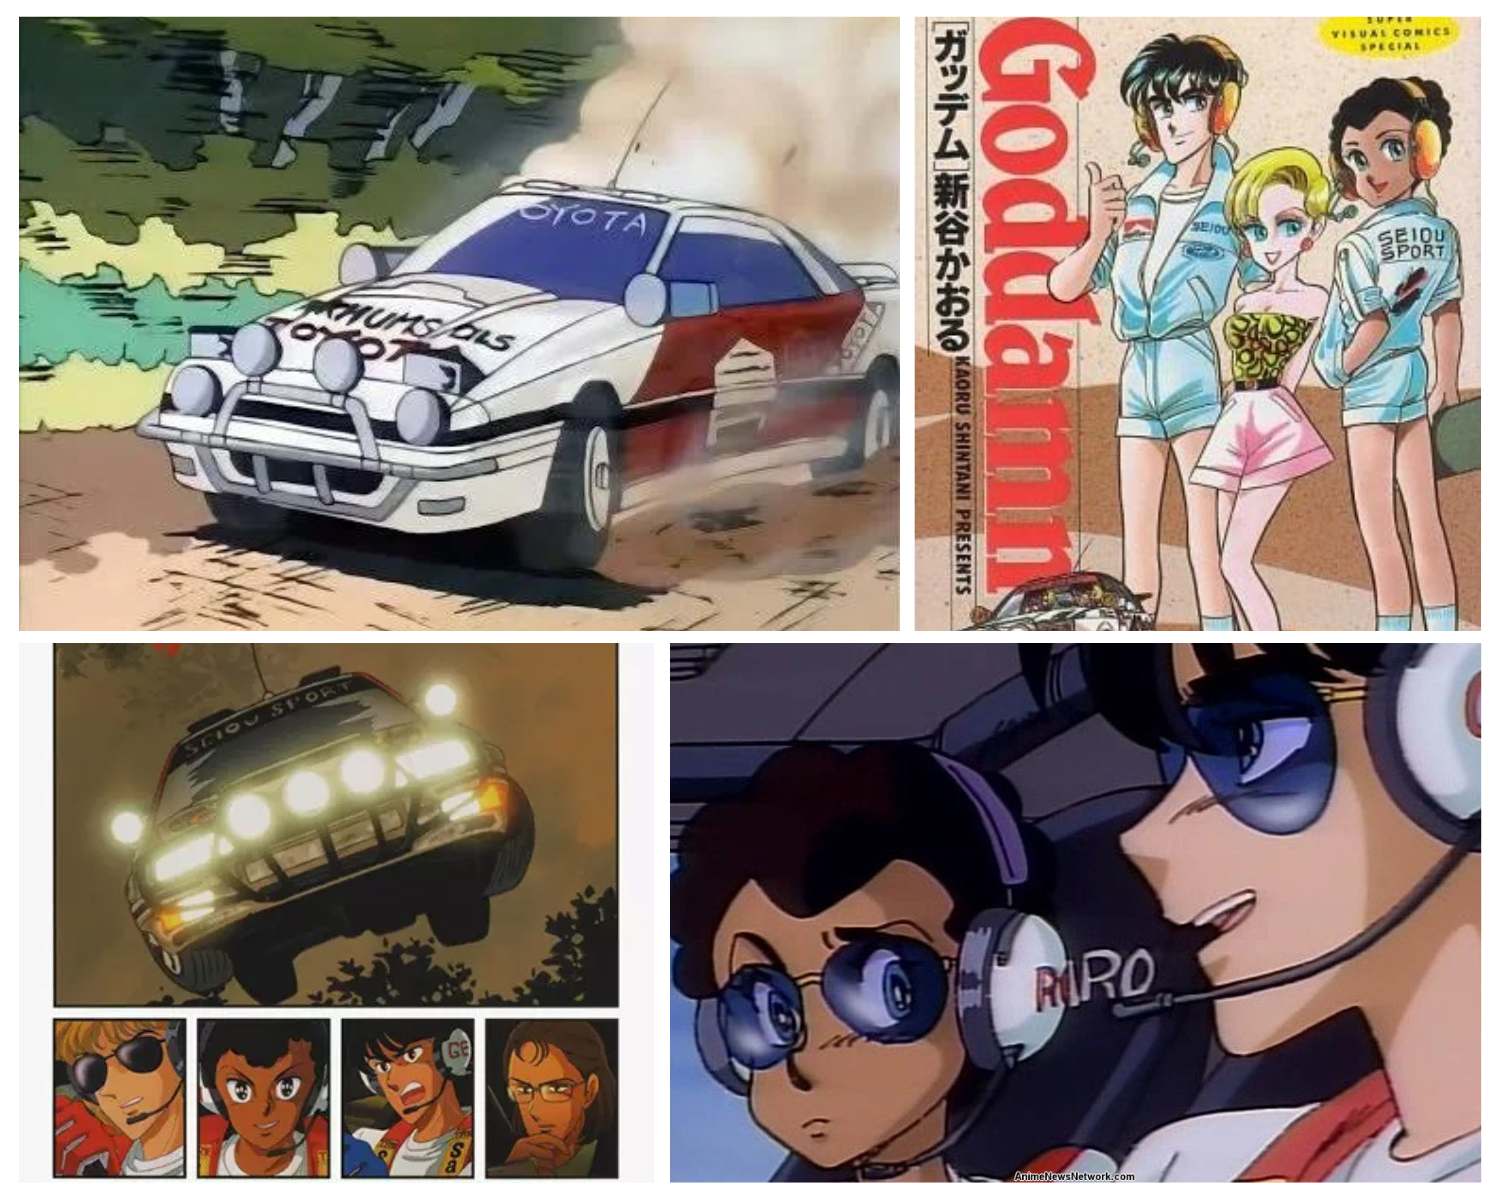 Goddamn - racing anime